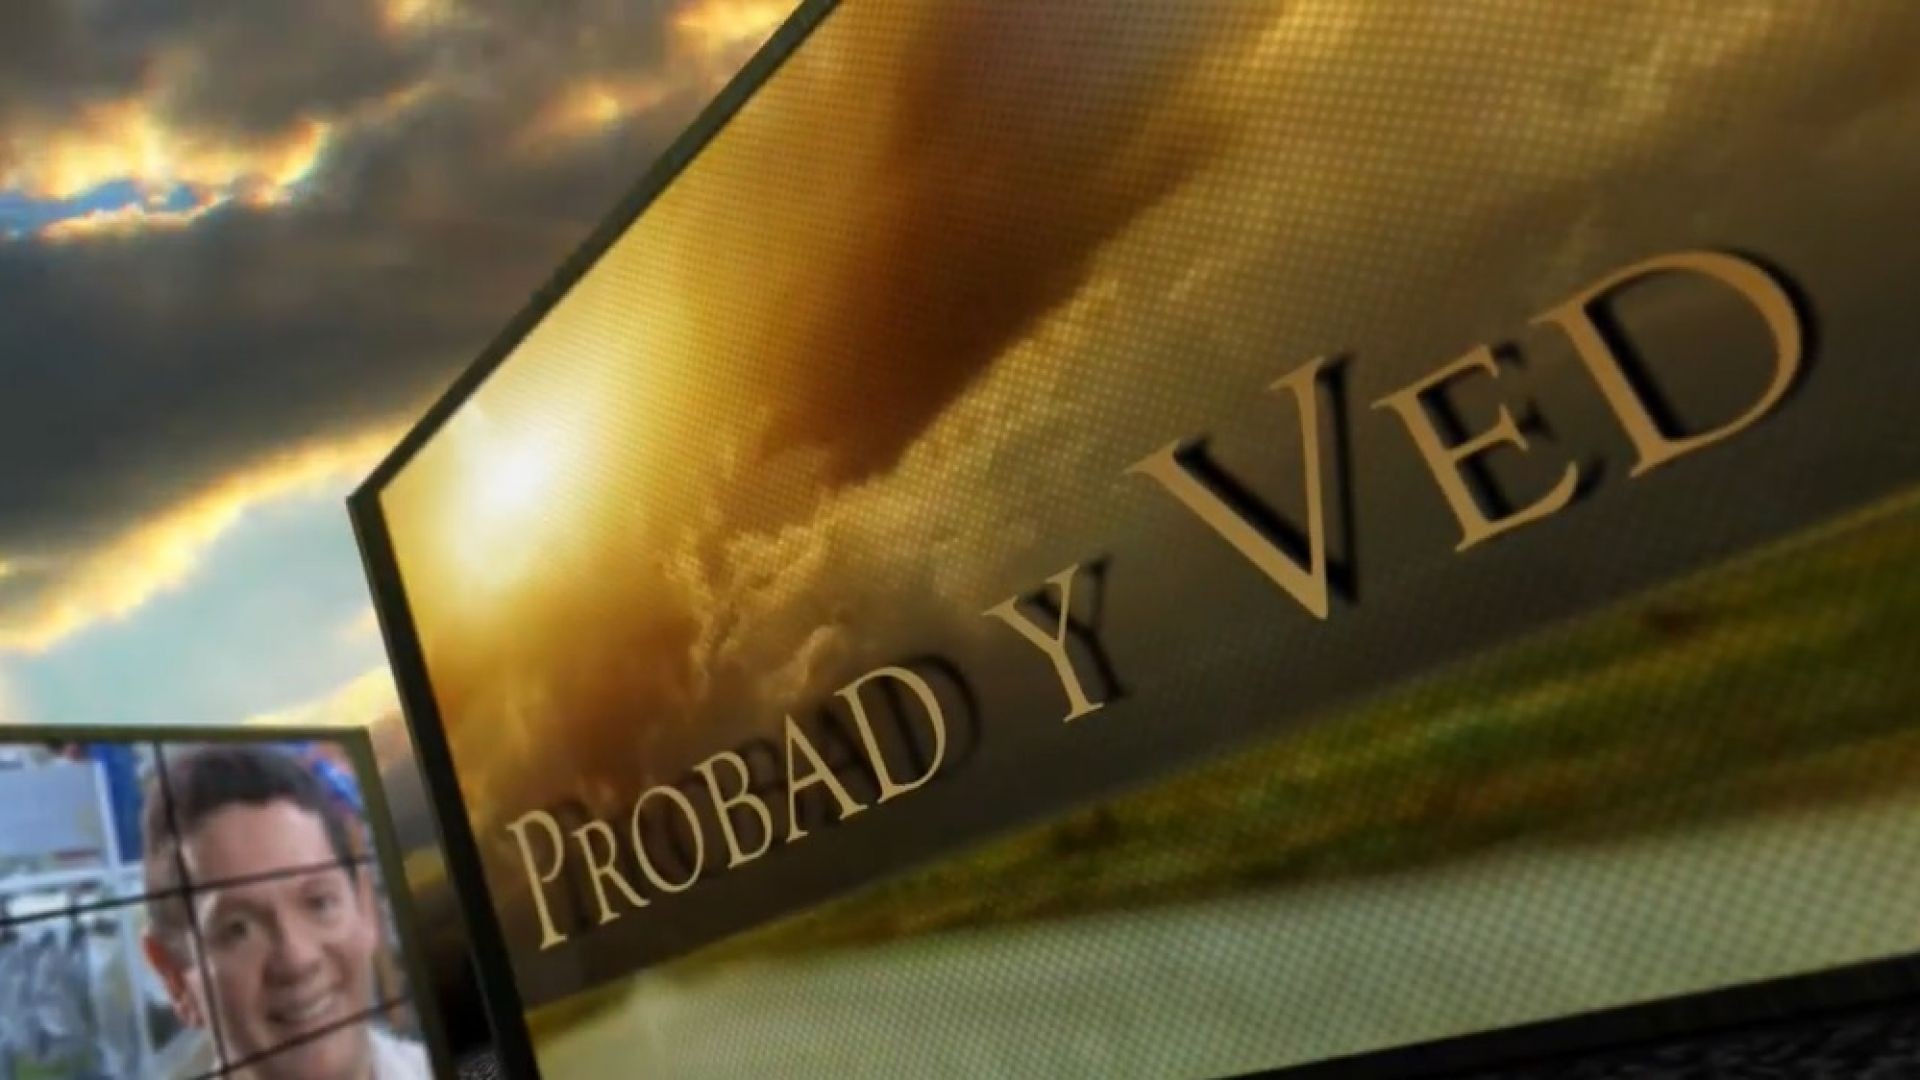 Probad y Ved 2013 - Doble bendición - 23/Mar